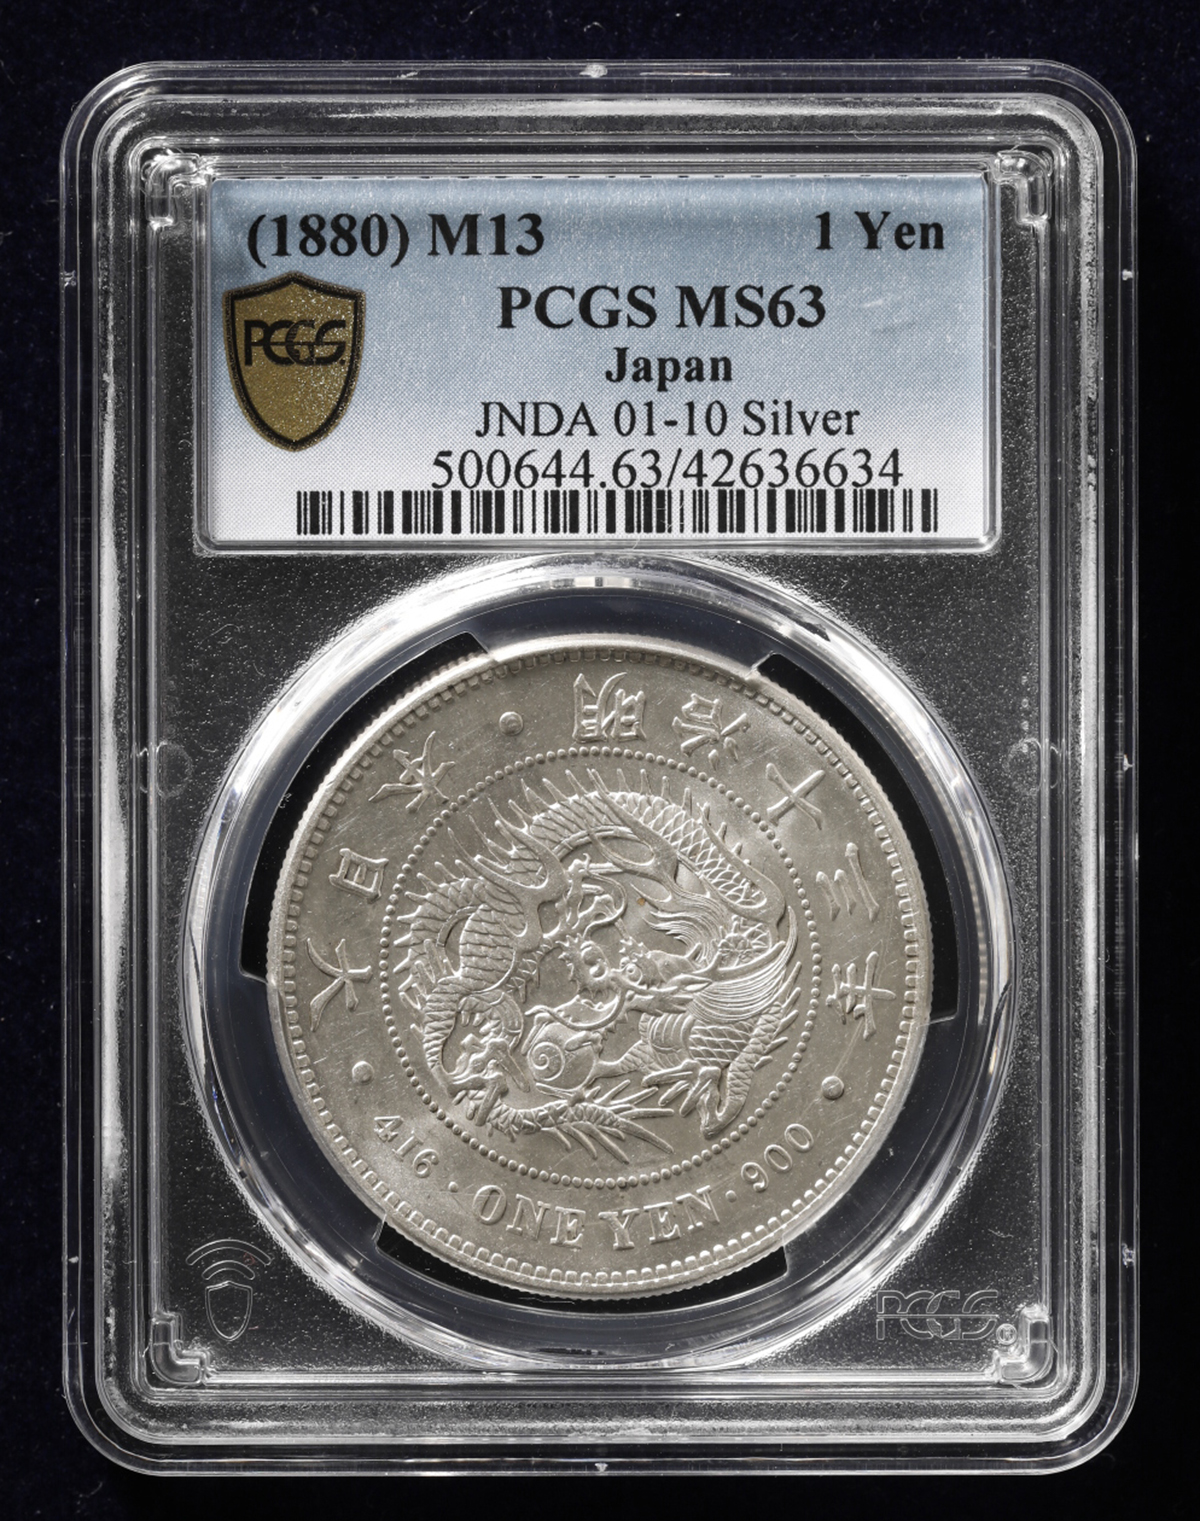 E018 NGC認定 明治36年 新一圓銀貨 (小型) 旧貨幣